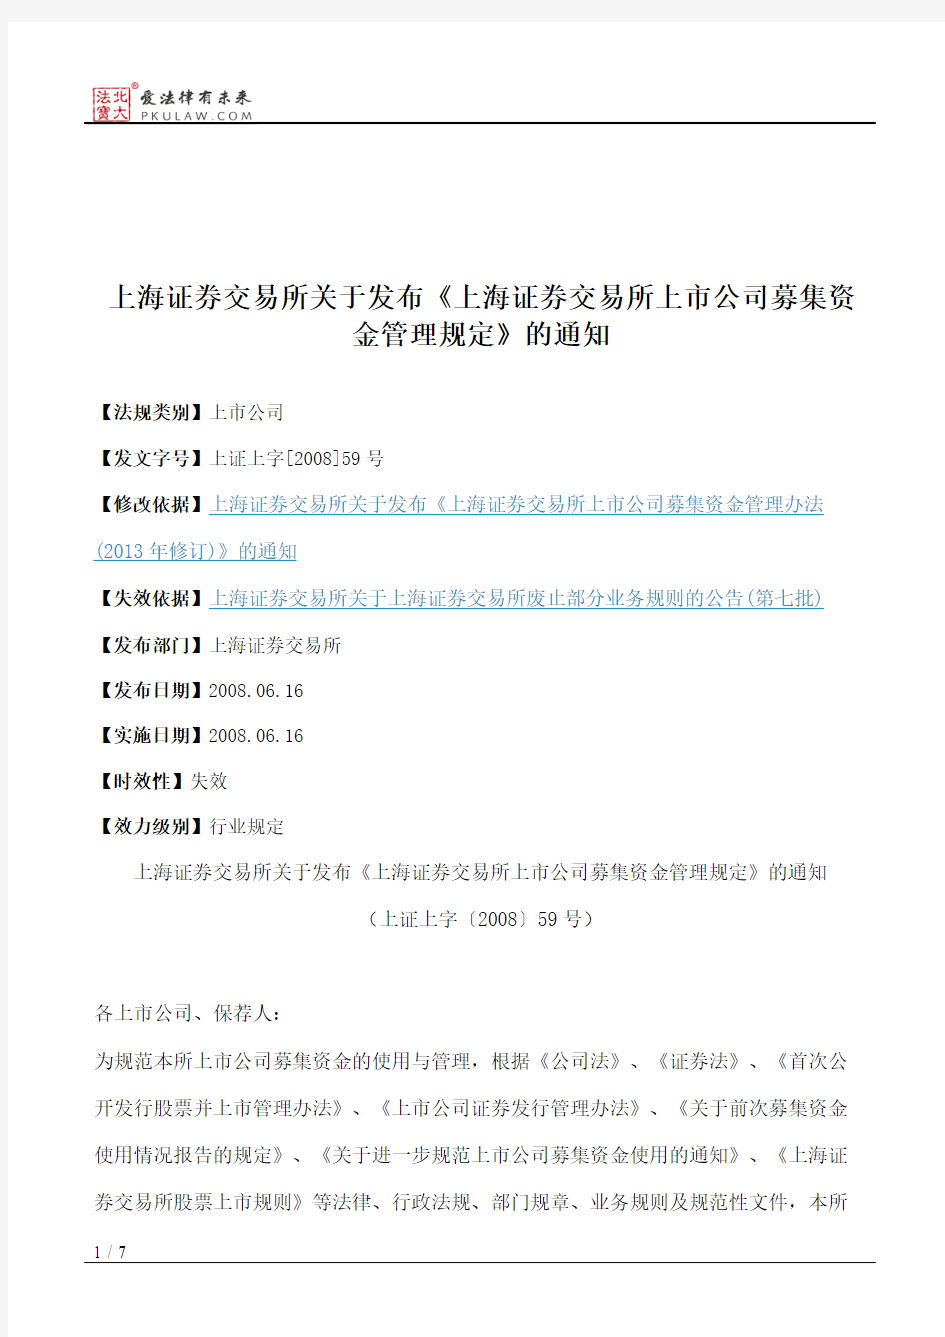 上海证券交易所关于发布《上海证券交易所上市公司募集资金管理规